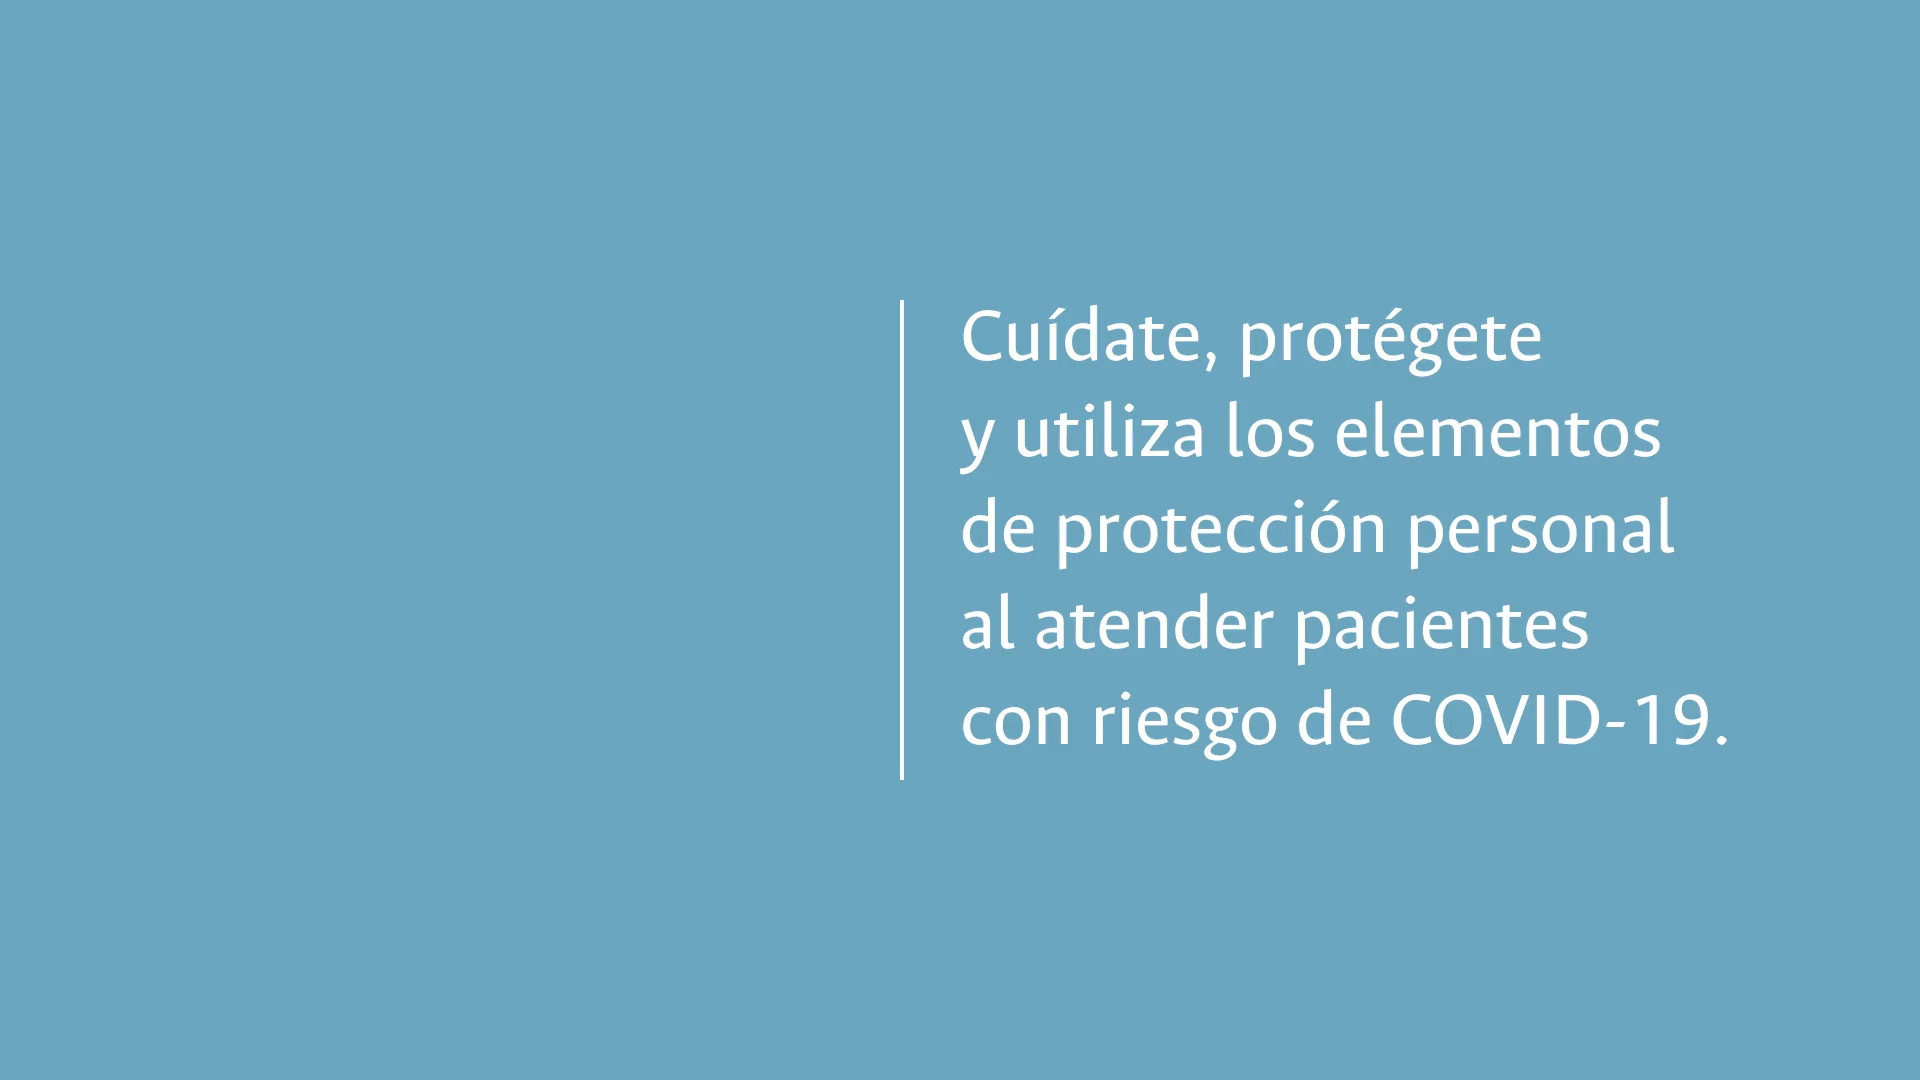 Cuídate, protégete y utiliza los elementos de protección personal al atender pacientes con riesgo de COVID-19